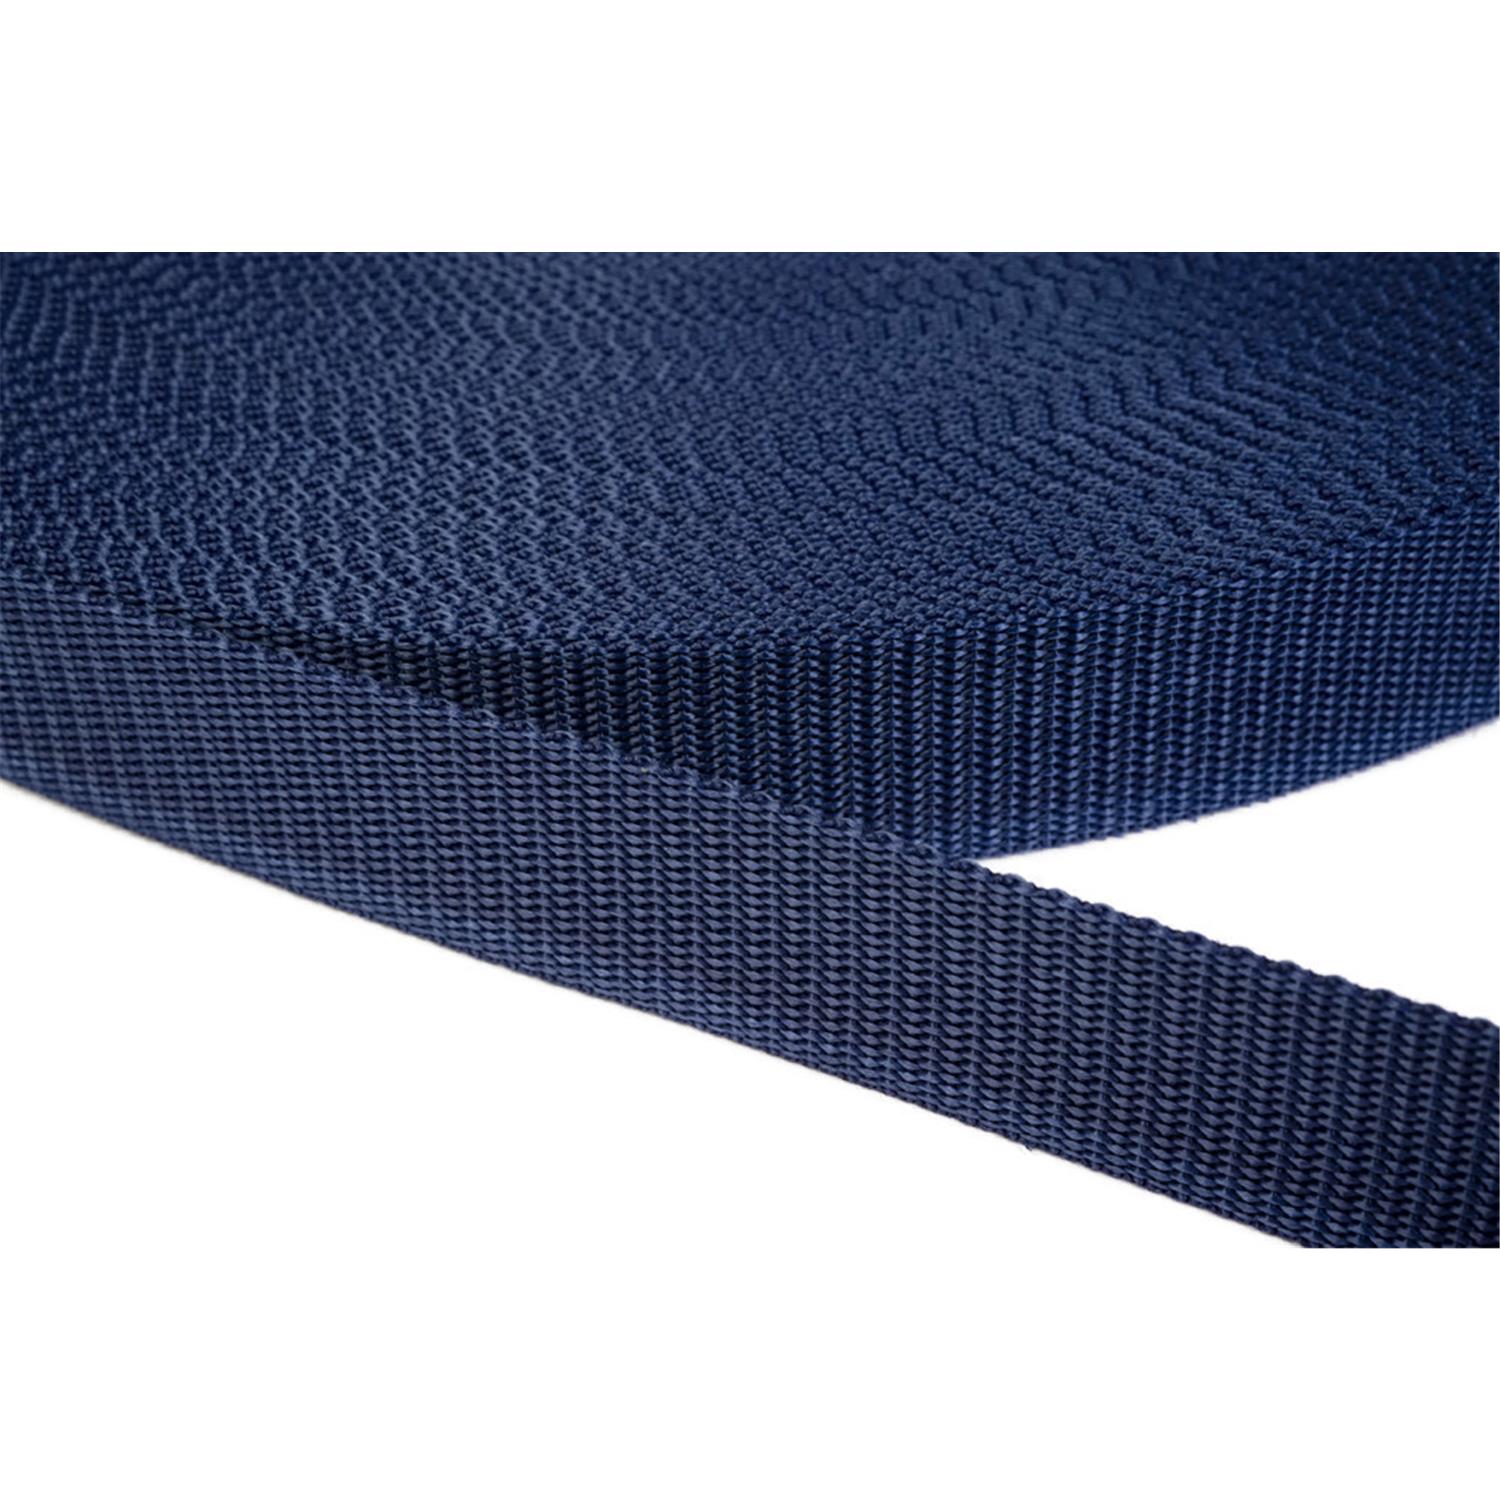 Gurtband 20mm breit aus Polypropylen in 41 Farben 27 - dunkelblau 06 Meter